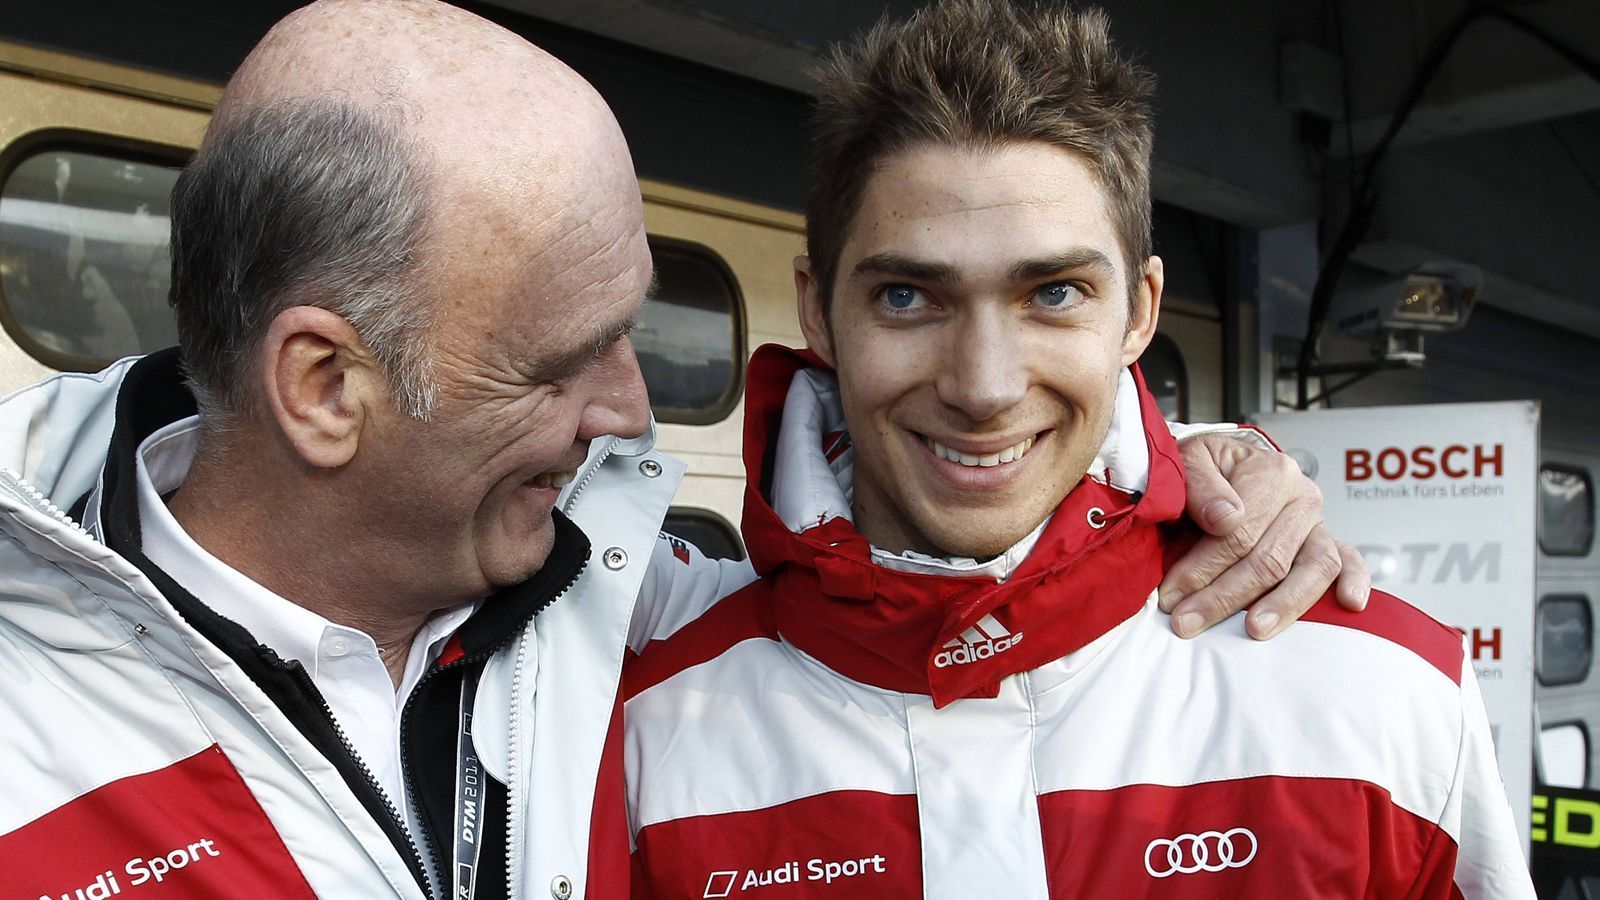 
                <strong>2011 - Edoardo Mortara - Platz 9</strong><br>
                Der spätere Formel-E-Pilot debütierte 2011 stark. Mortara wurde Neunter und stand in der Saison zwei Mal auf dem Podium.
              